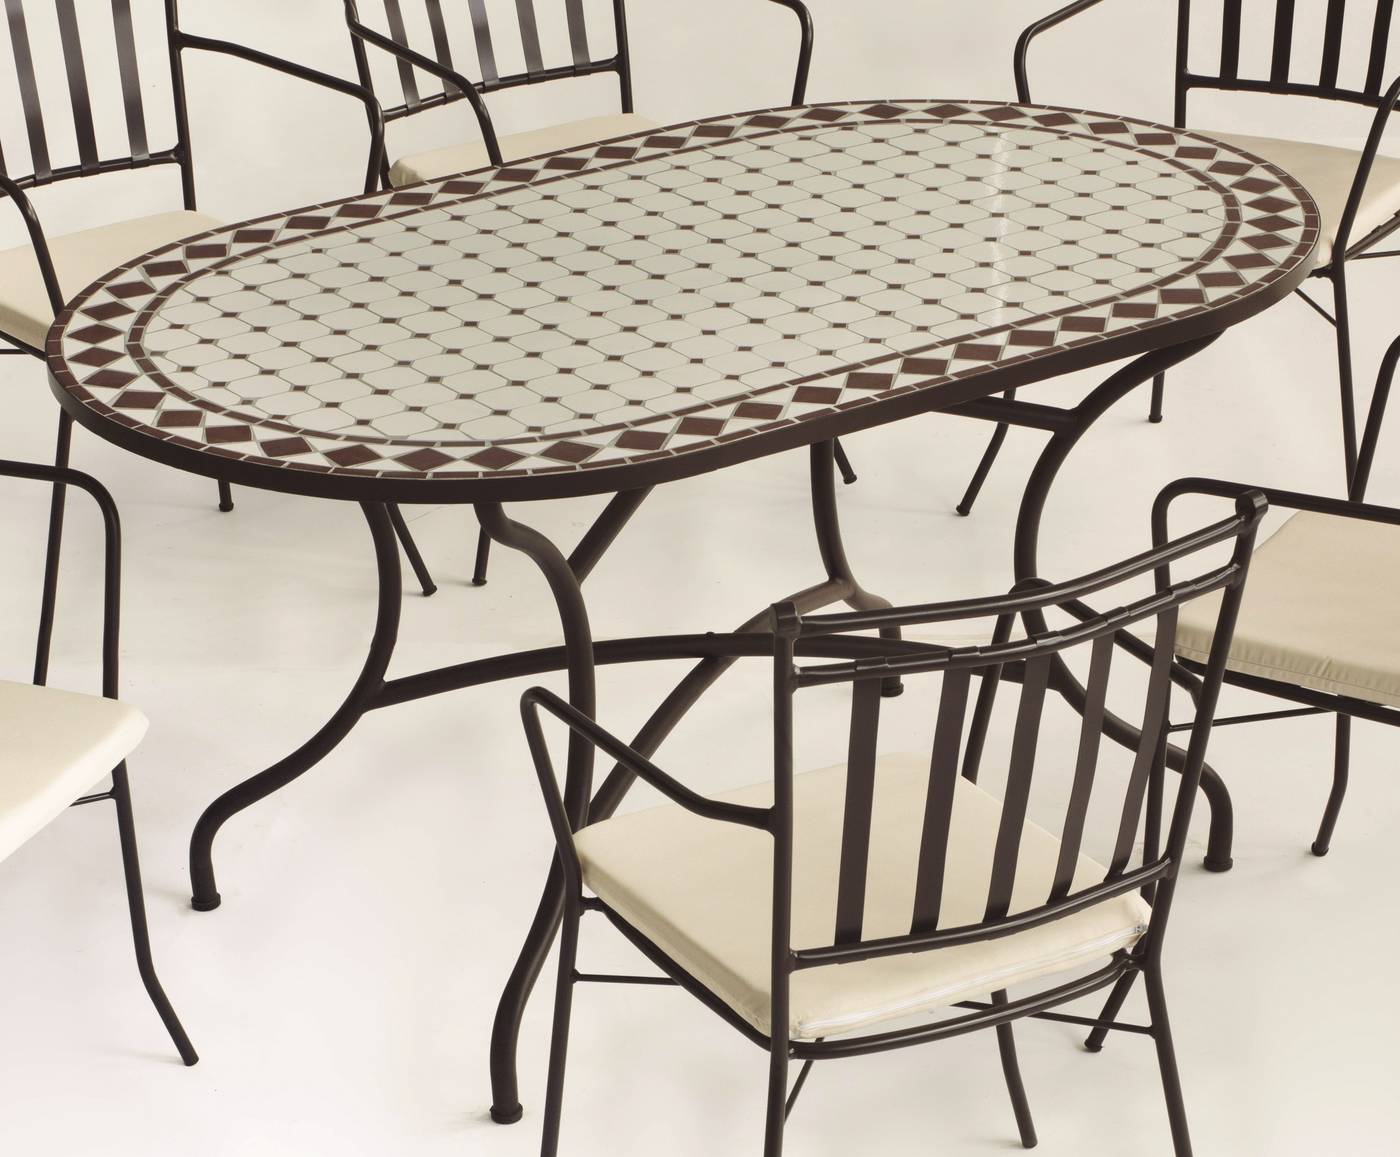 Conjunto Mosaico Sambala150-Bahia - Conjunto de forja color marrón: mesa con tablero mosaico ovalado de 150 cm + 4 sillones de ratán con cojines.